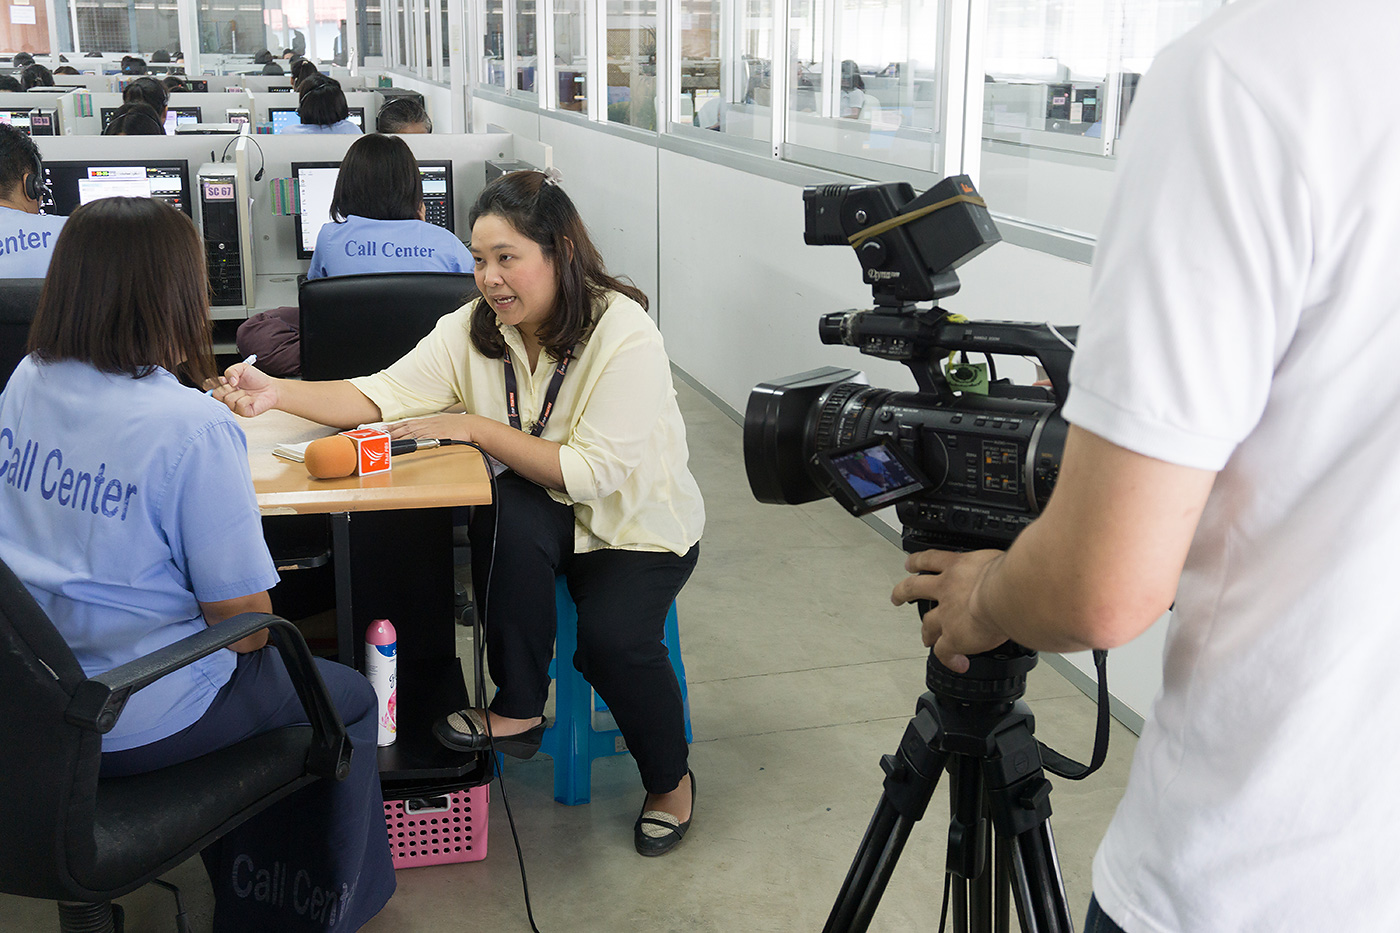 พิธีกรรายการที่นี่ Thai PBS สัมภาษณ์นักโทษทัณฑสถานบำบัดพิเศษหญิง